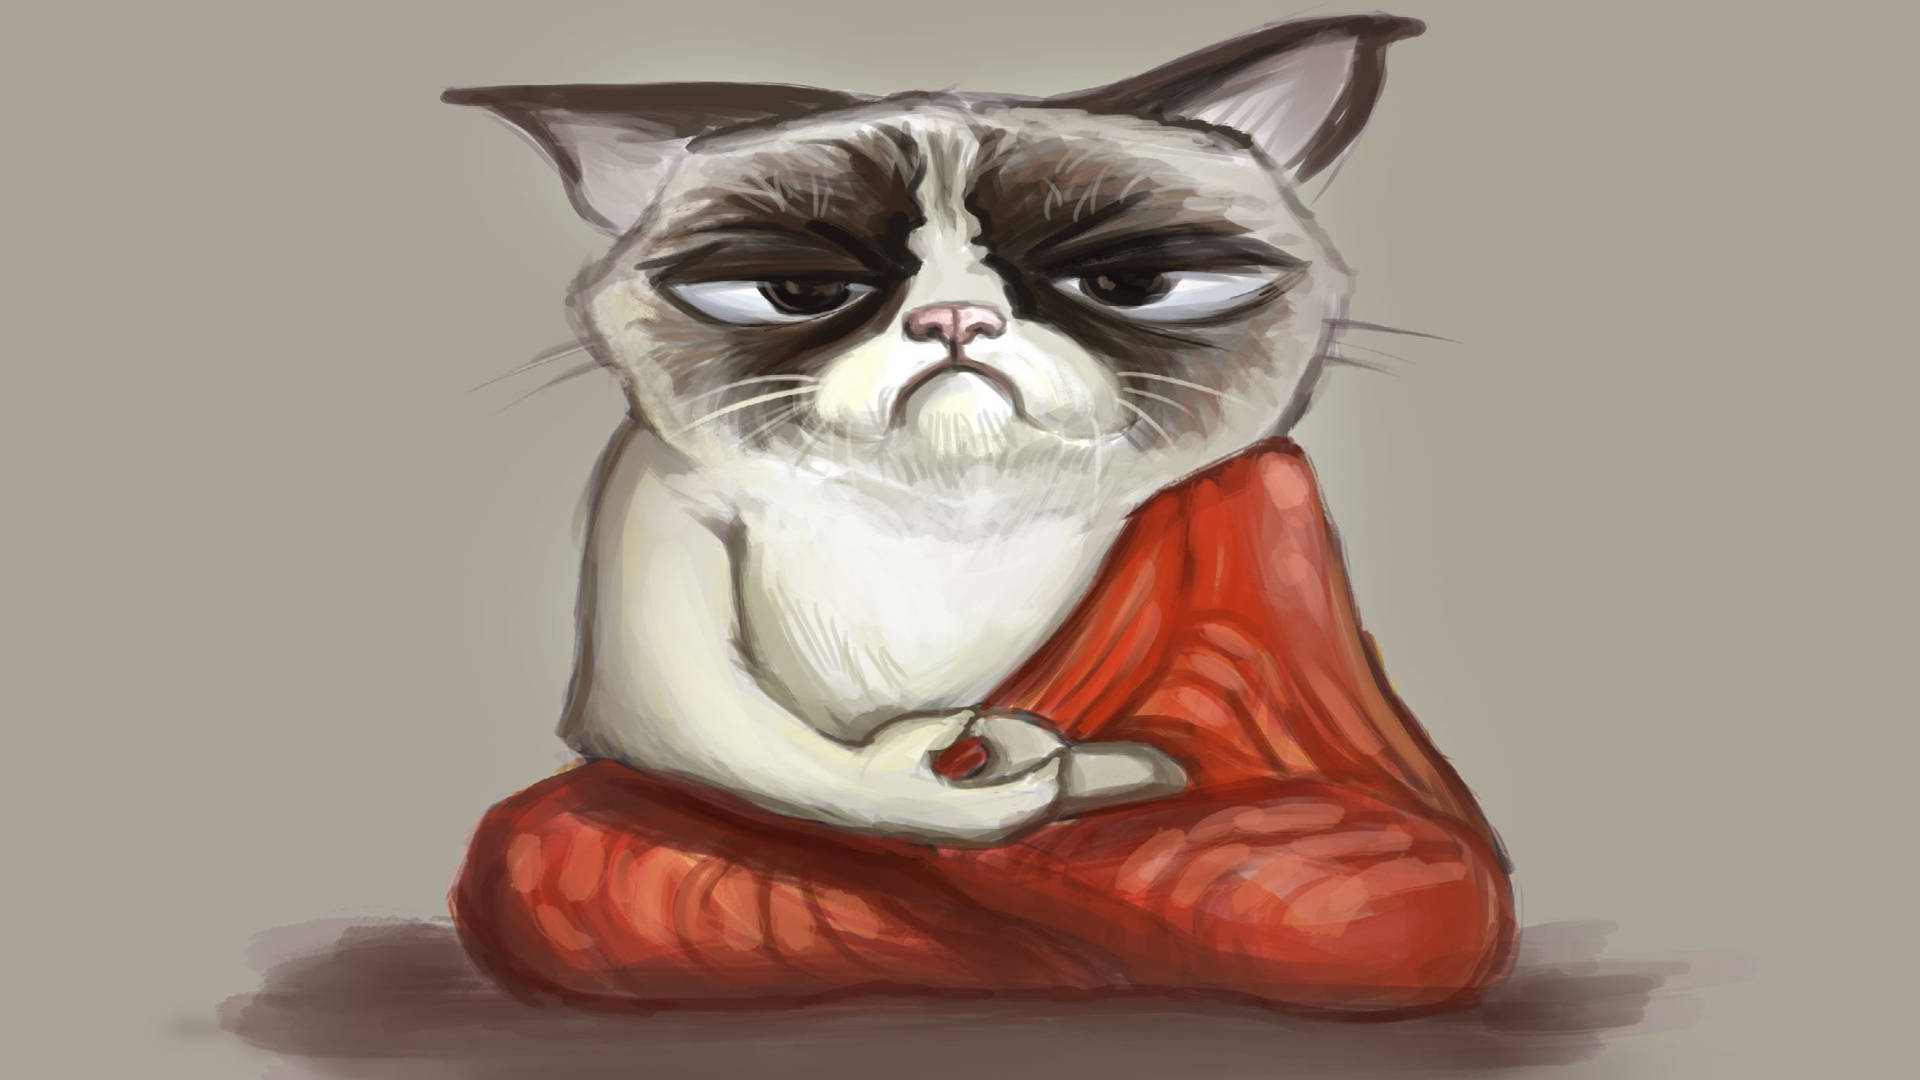 Grumpy grey cat meme wallpaper.